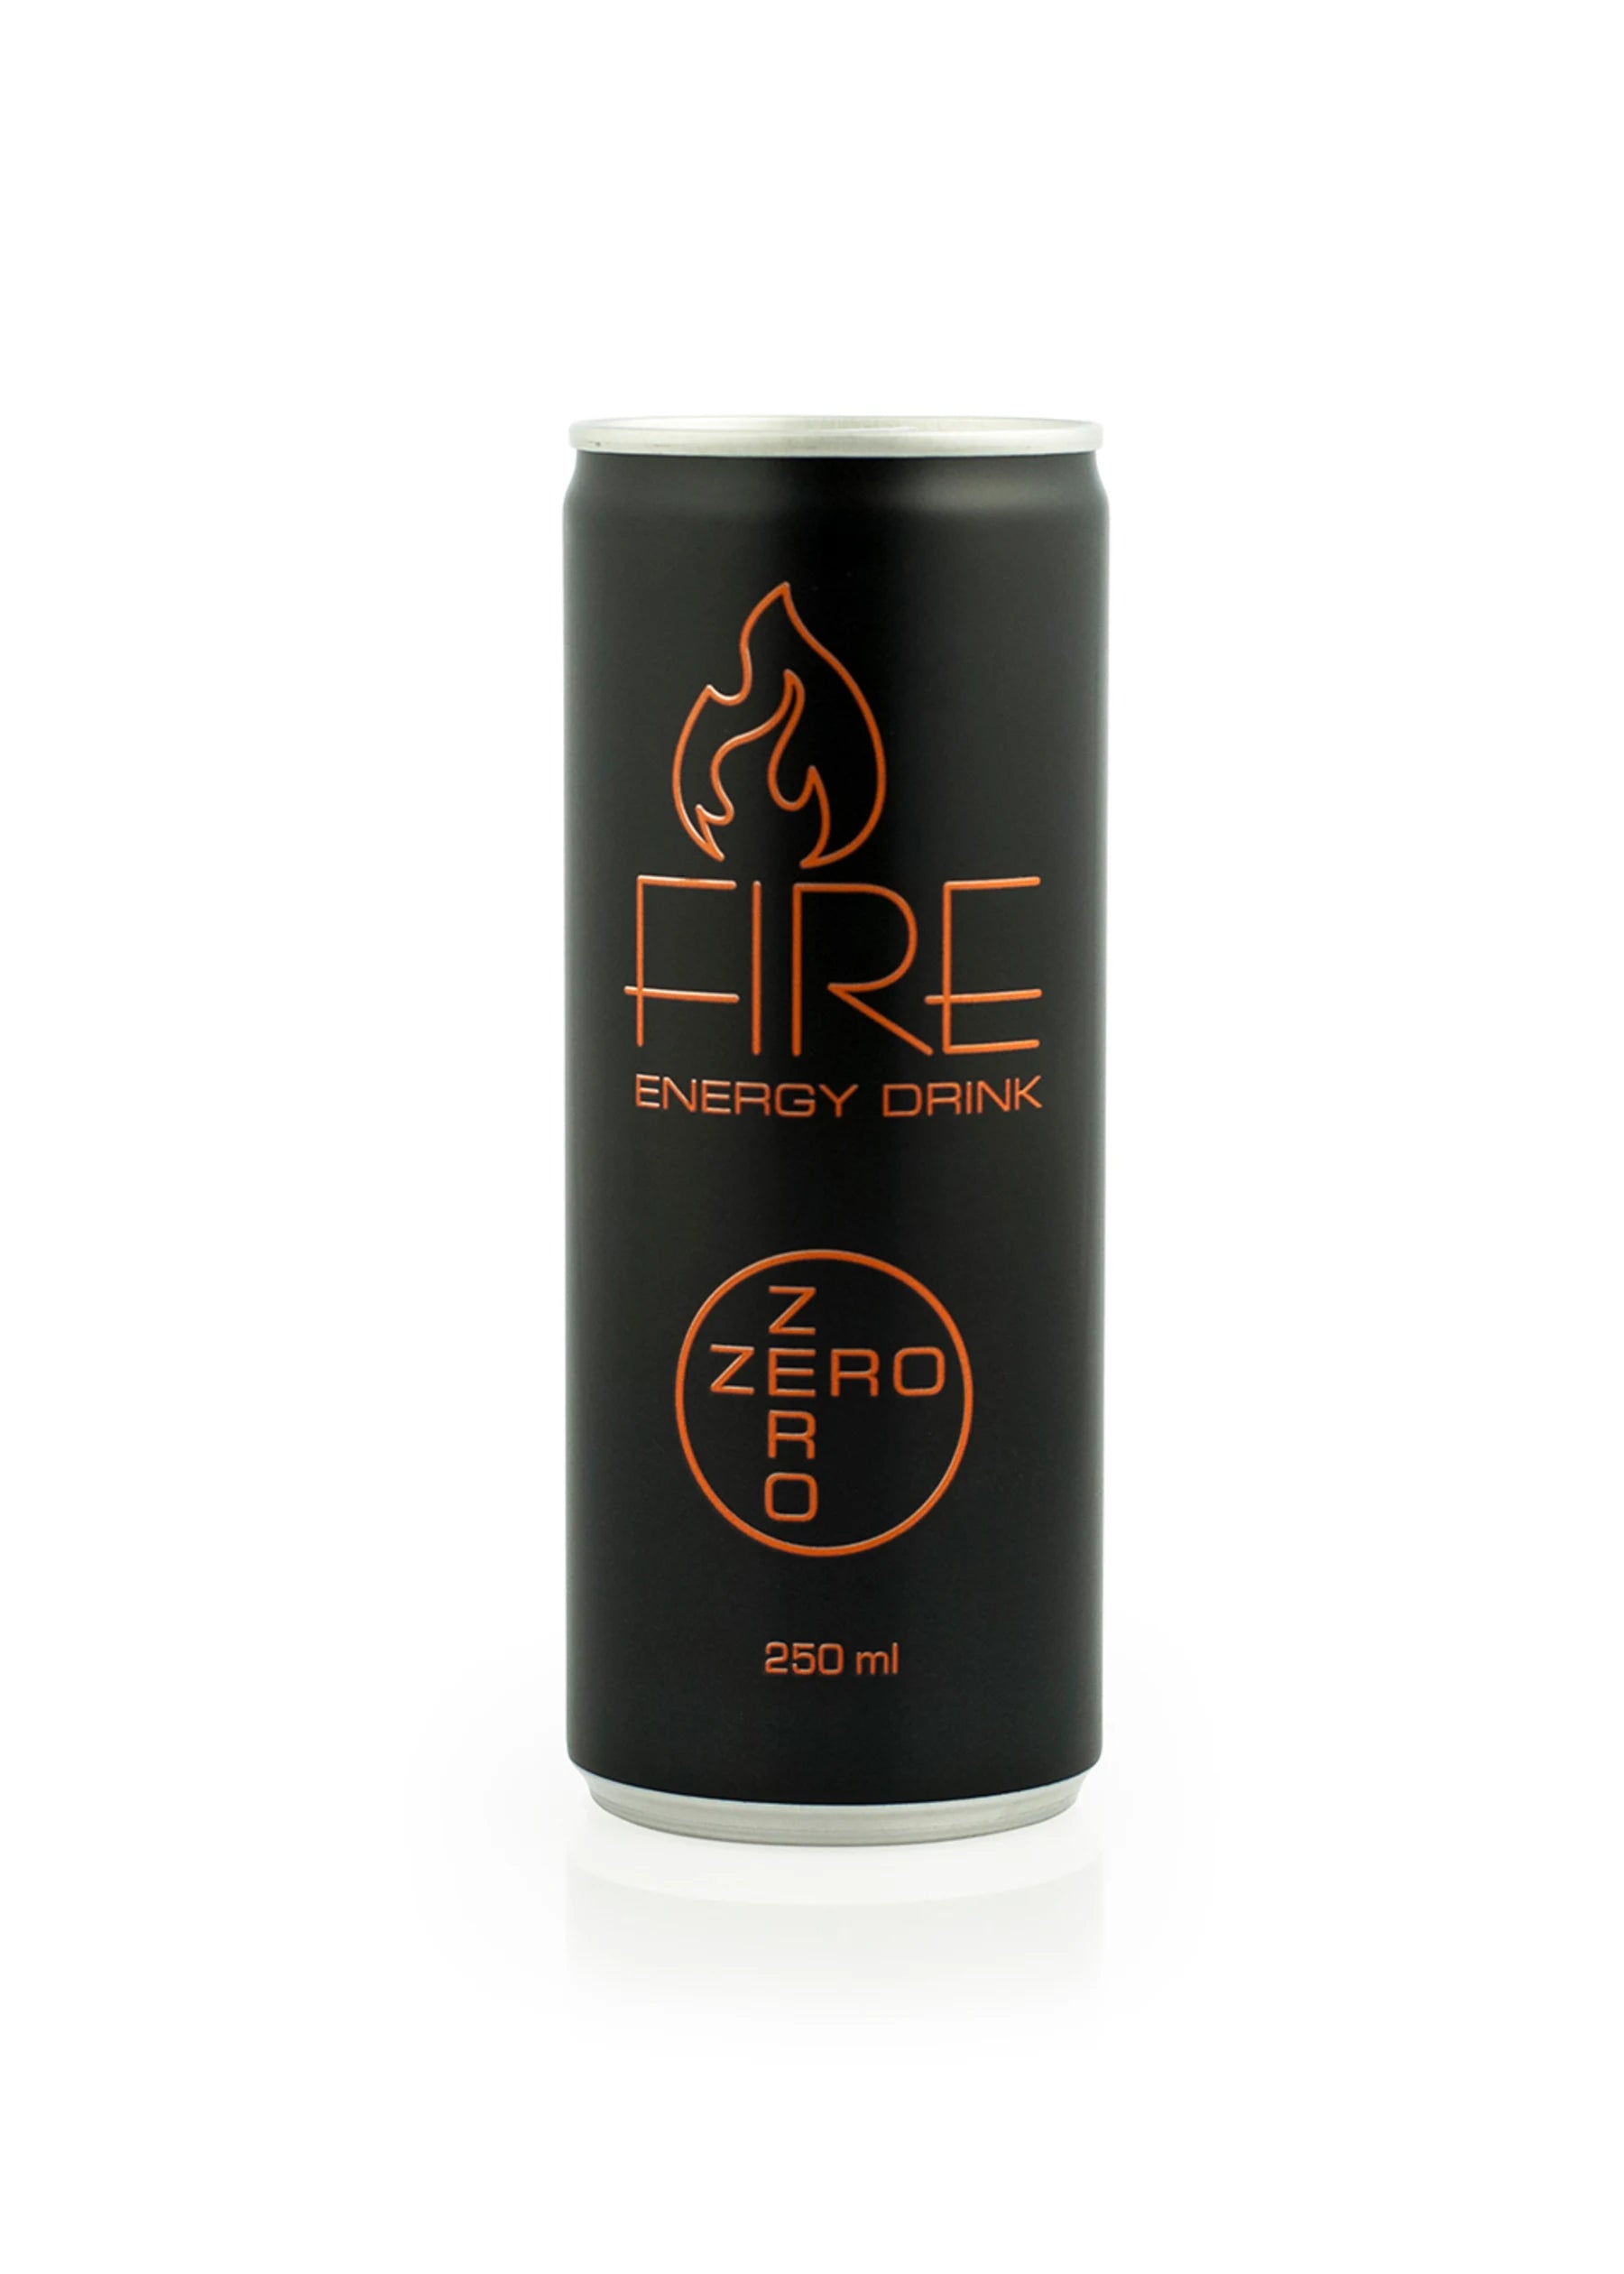 Brug Fire Energy Drink - Zero (250 ml) til en forbedret oplevelse